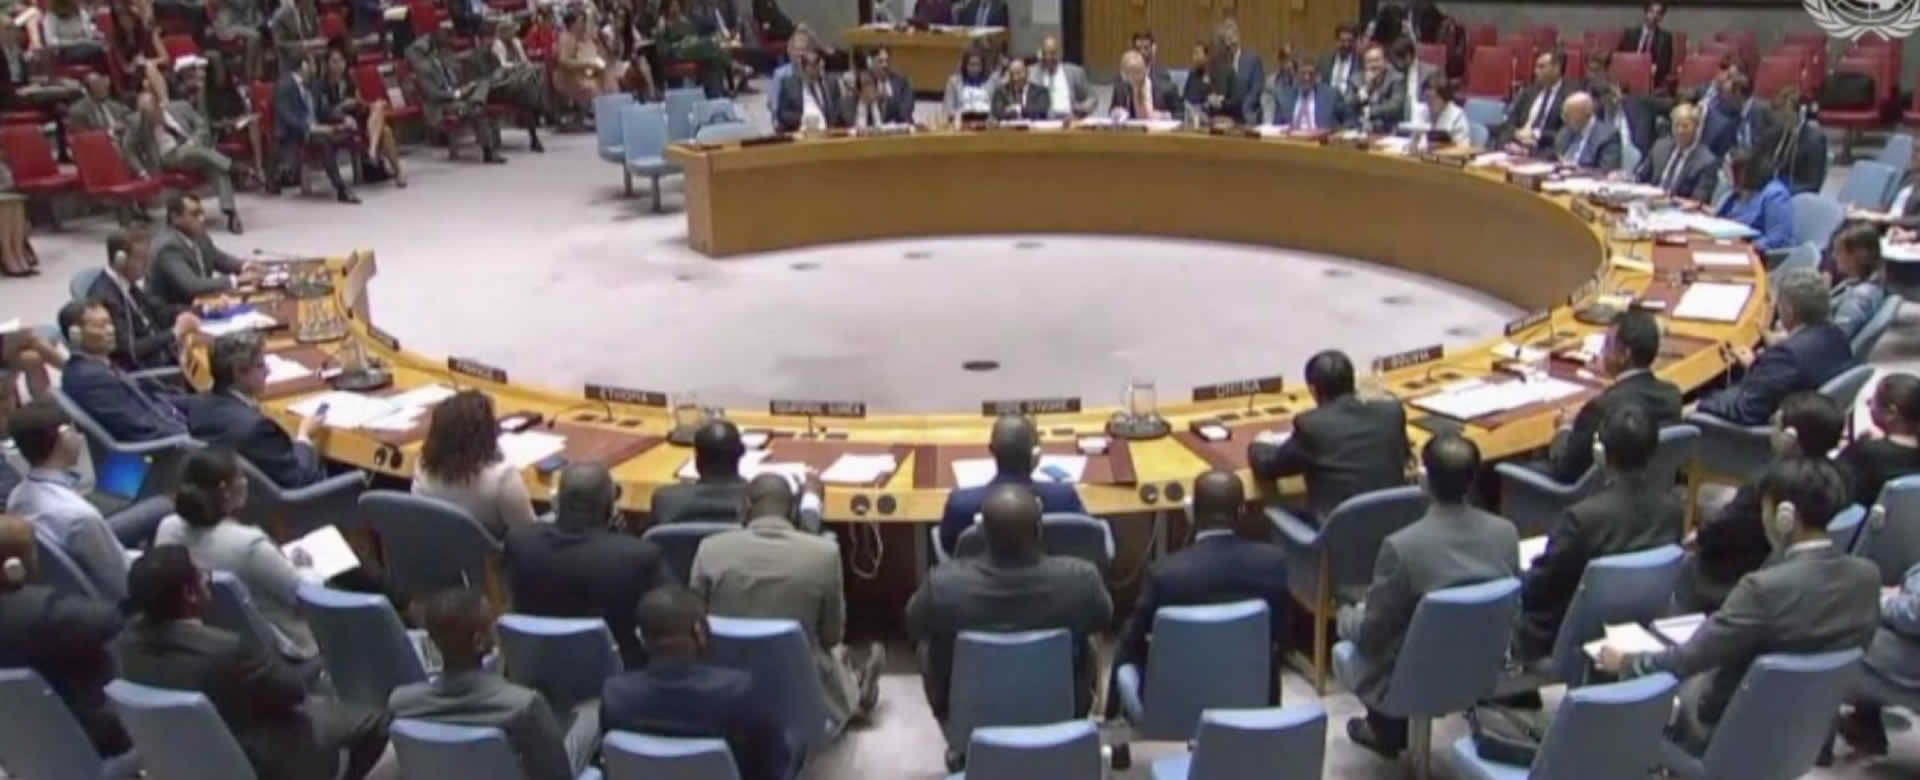 Rusia y China rechazan reunión sobre Nicaragua durante sesión del Consejo de Seguridad de la ONU